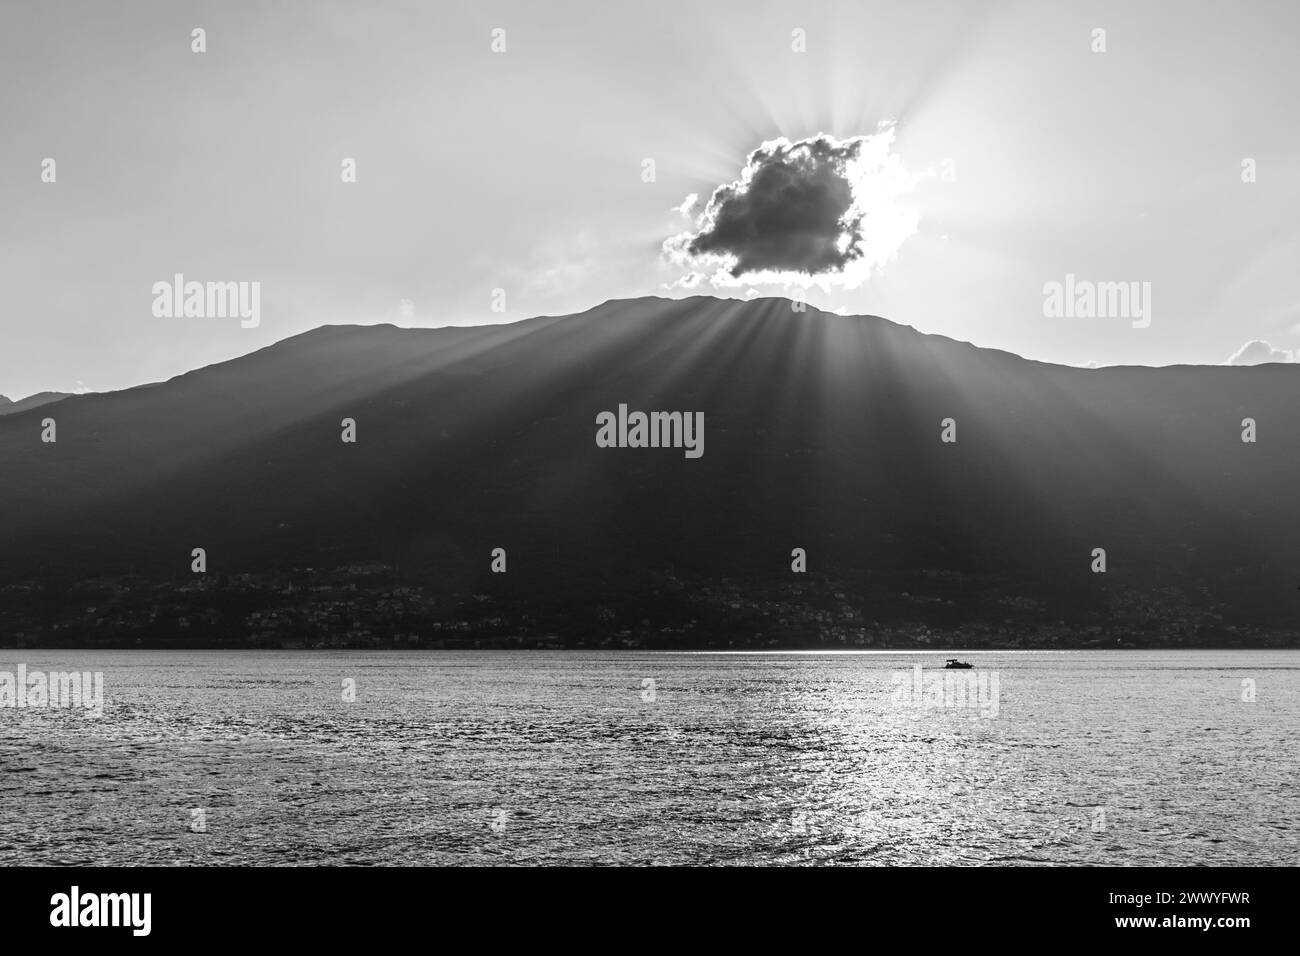 Eine ruhige Szene, in der die ruhige Schönheit eines Bergsees bei Sonnenuntergang festgehalten wird. Sonnenstrahlen durchdringen eine Wolke und werfen leuchtende Strahlen und funkelnde Reflexionen auf die Wasseroberfläche. Ein einsames Boot genießt die friedliche Atmosphäre, umgeben von der Silhouette der Berge. Schwarzweißbild. Stockfoto